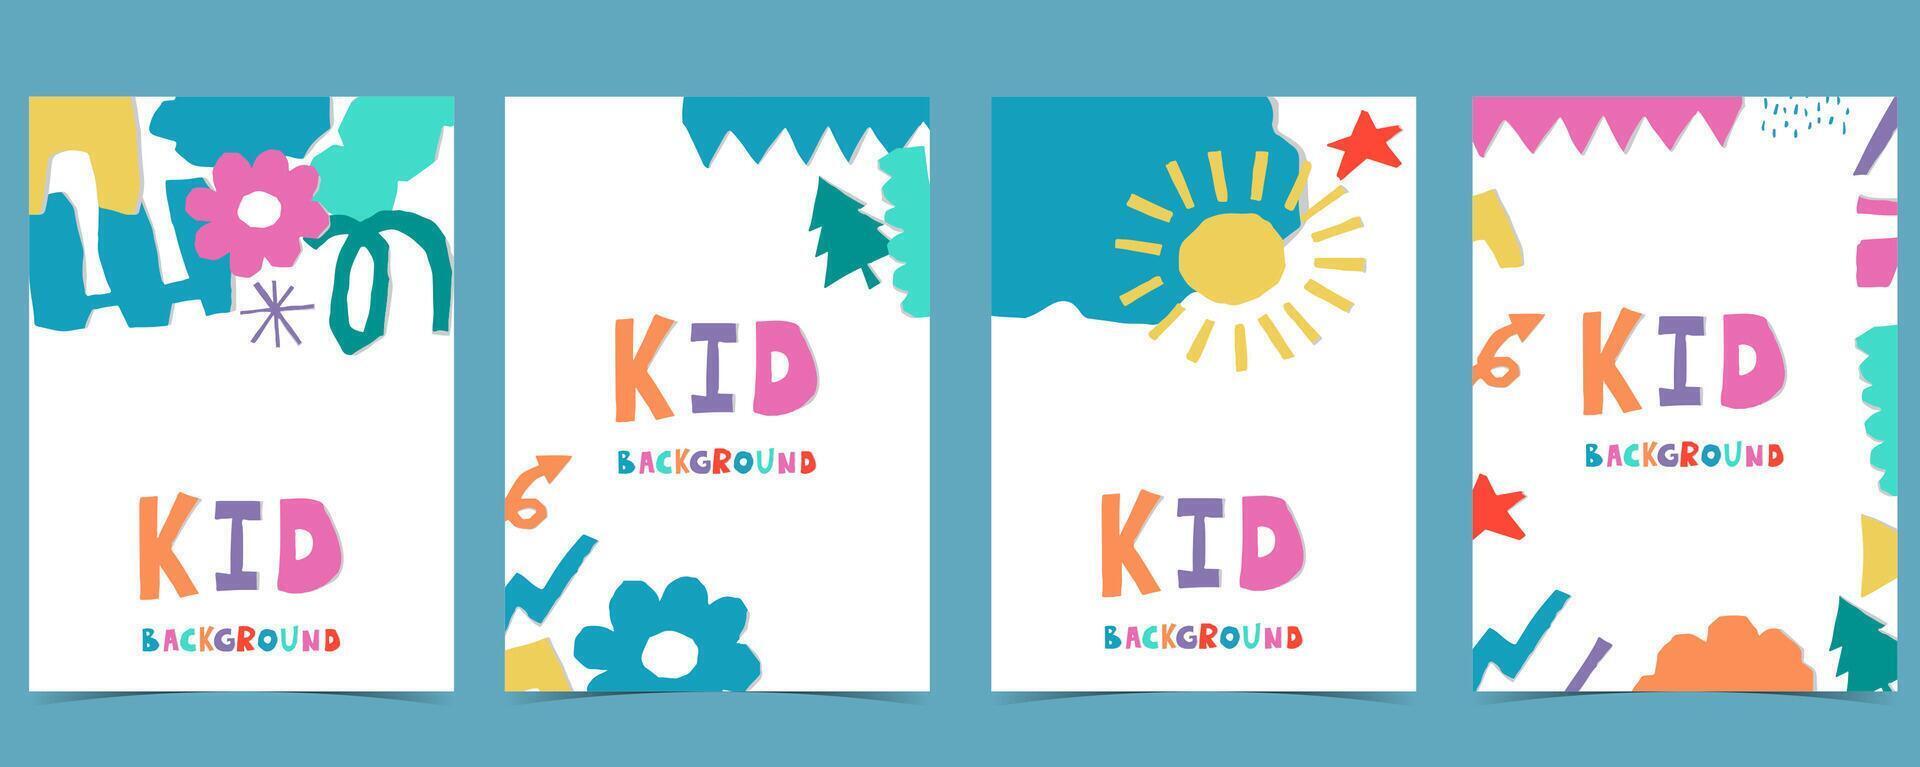 vorm papier besnoeiing uit achtergrond met kleurrijke.illustratie vector voor a4 verticaal kind ontwerp